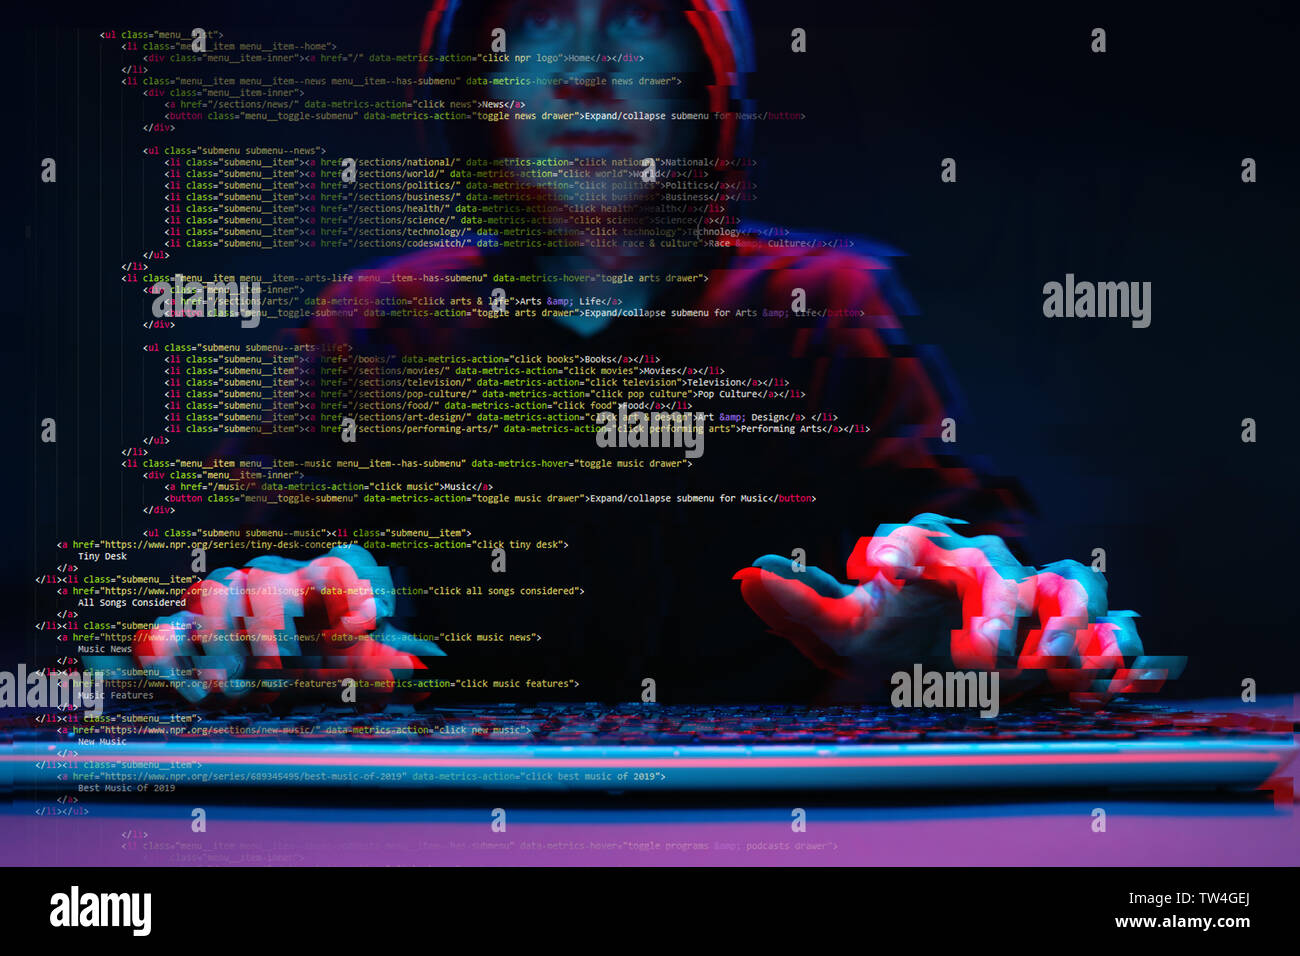 Hacker che lavora con il computer in camera oscura con interfaccia digitale intorno a. Immagine con effetto di glitch. Foto Stock